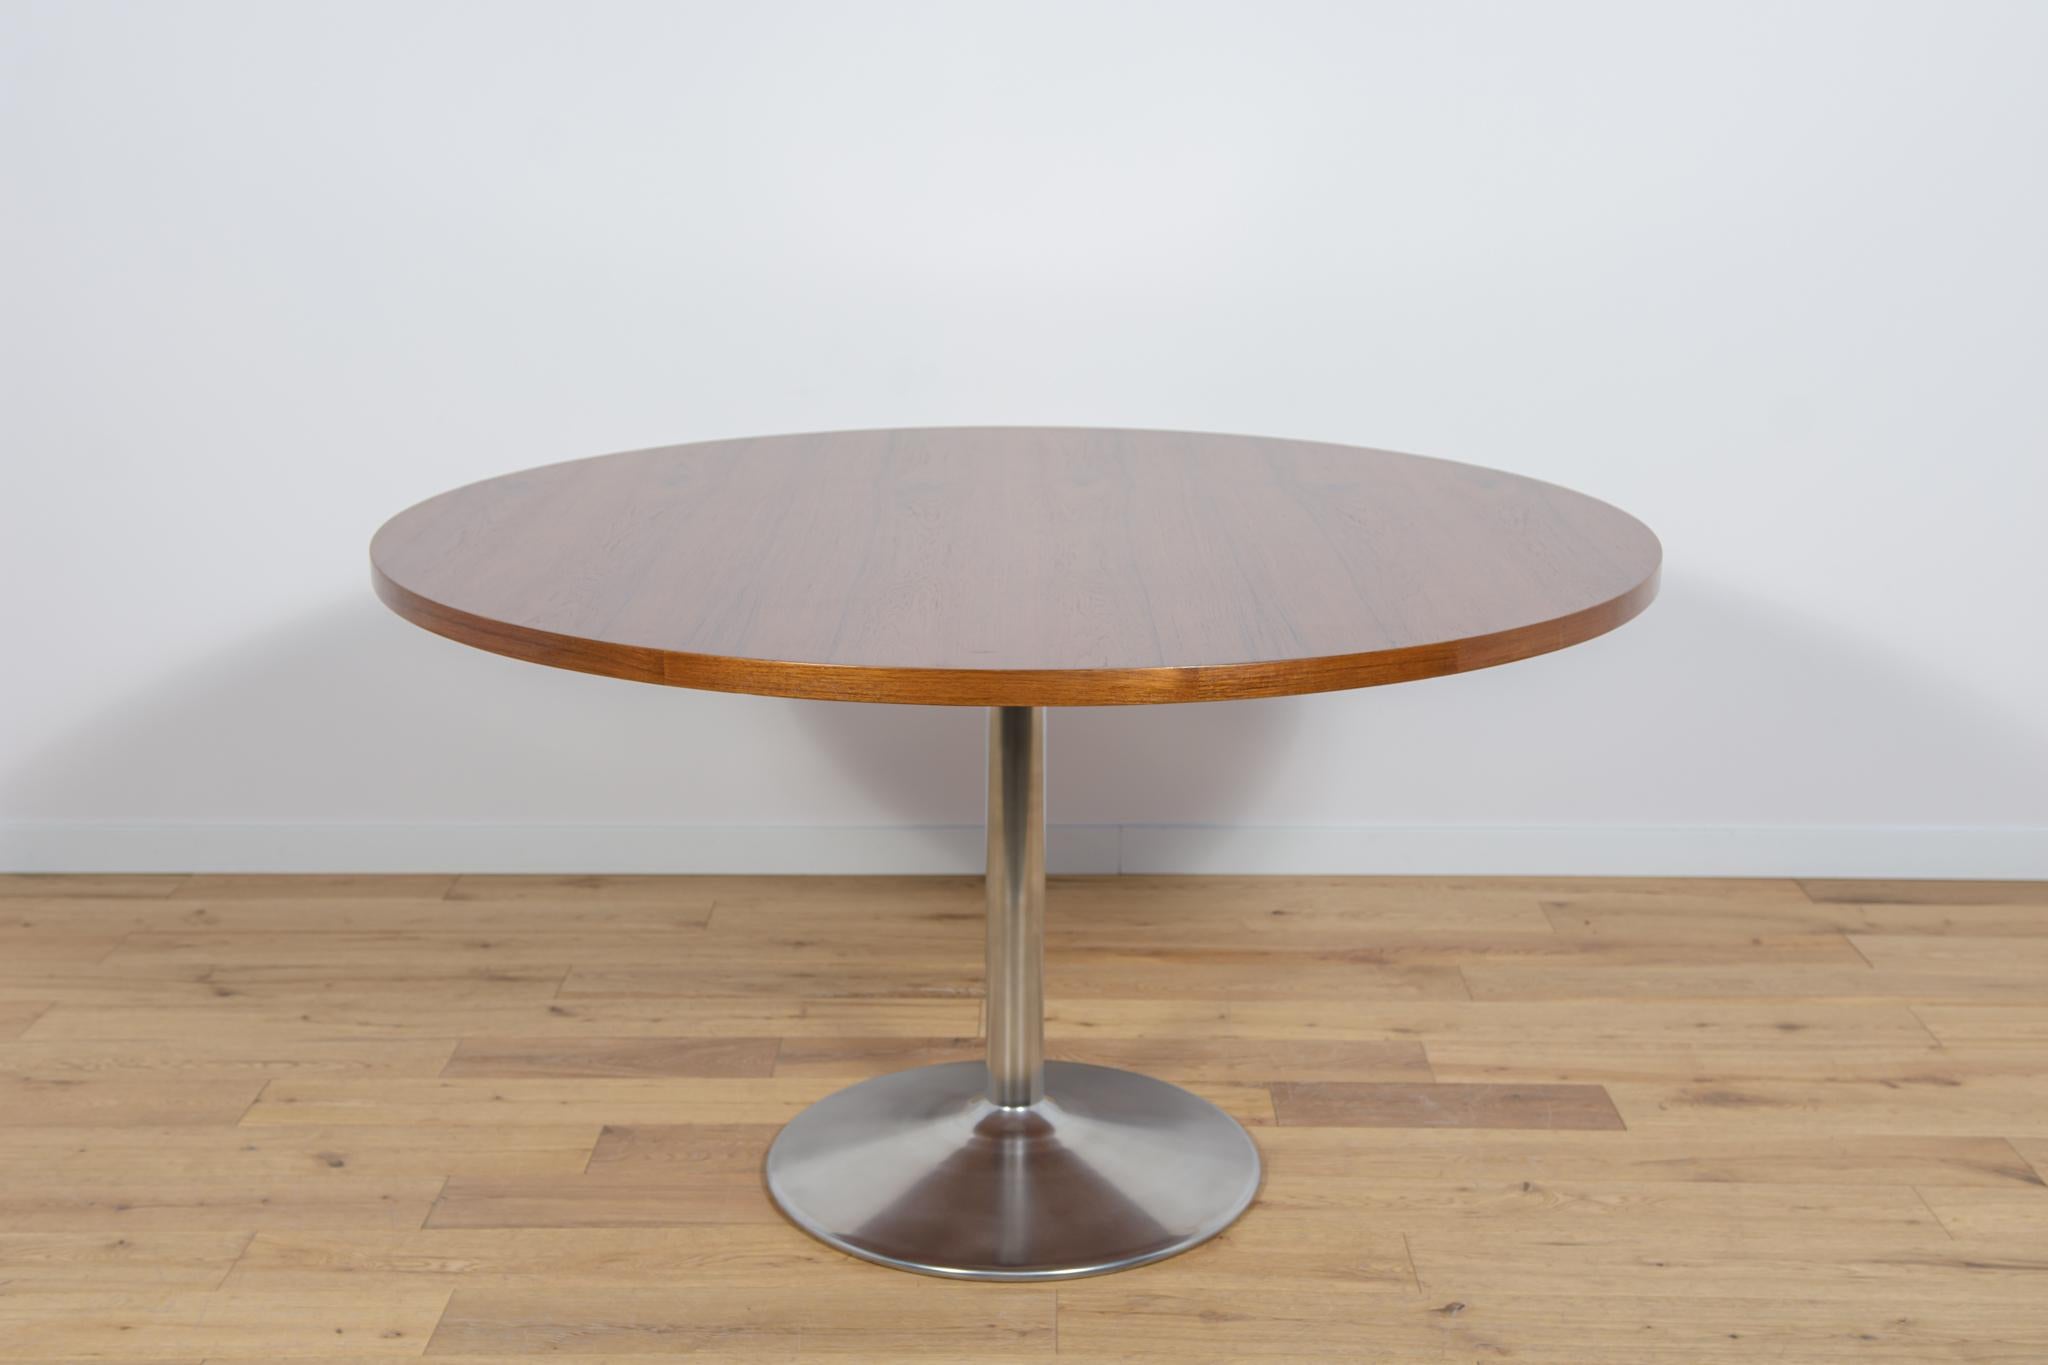 Der Tisch wurde in den 1970er Jahren in Dänemark hergestellt. Tischplatte aus Teakholzfurnier. Die Möbel sind nach einer umfassenden Tischlerrenovierung von der alten Beschichtung befreit und mit hochwertigem dänischem Öl behandelt worden. Der